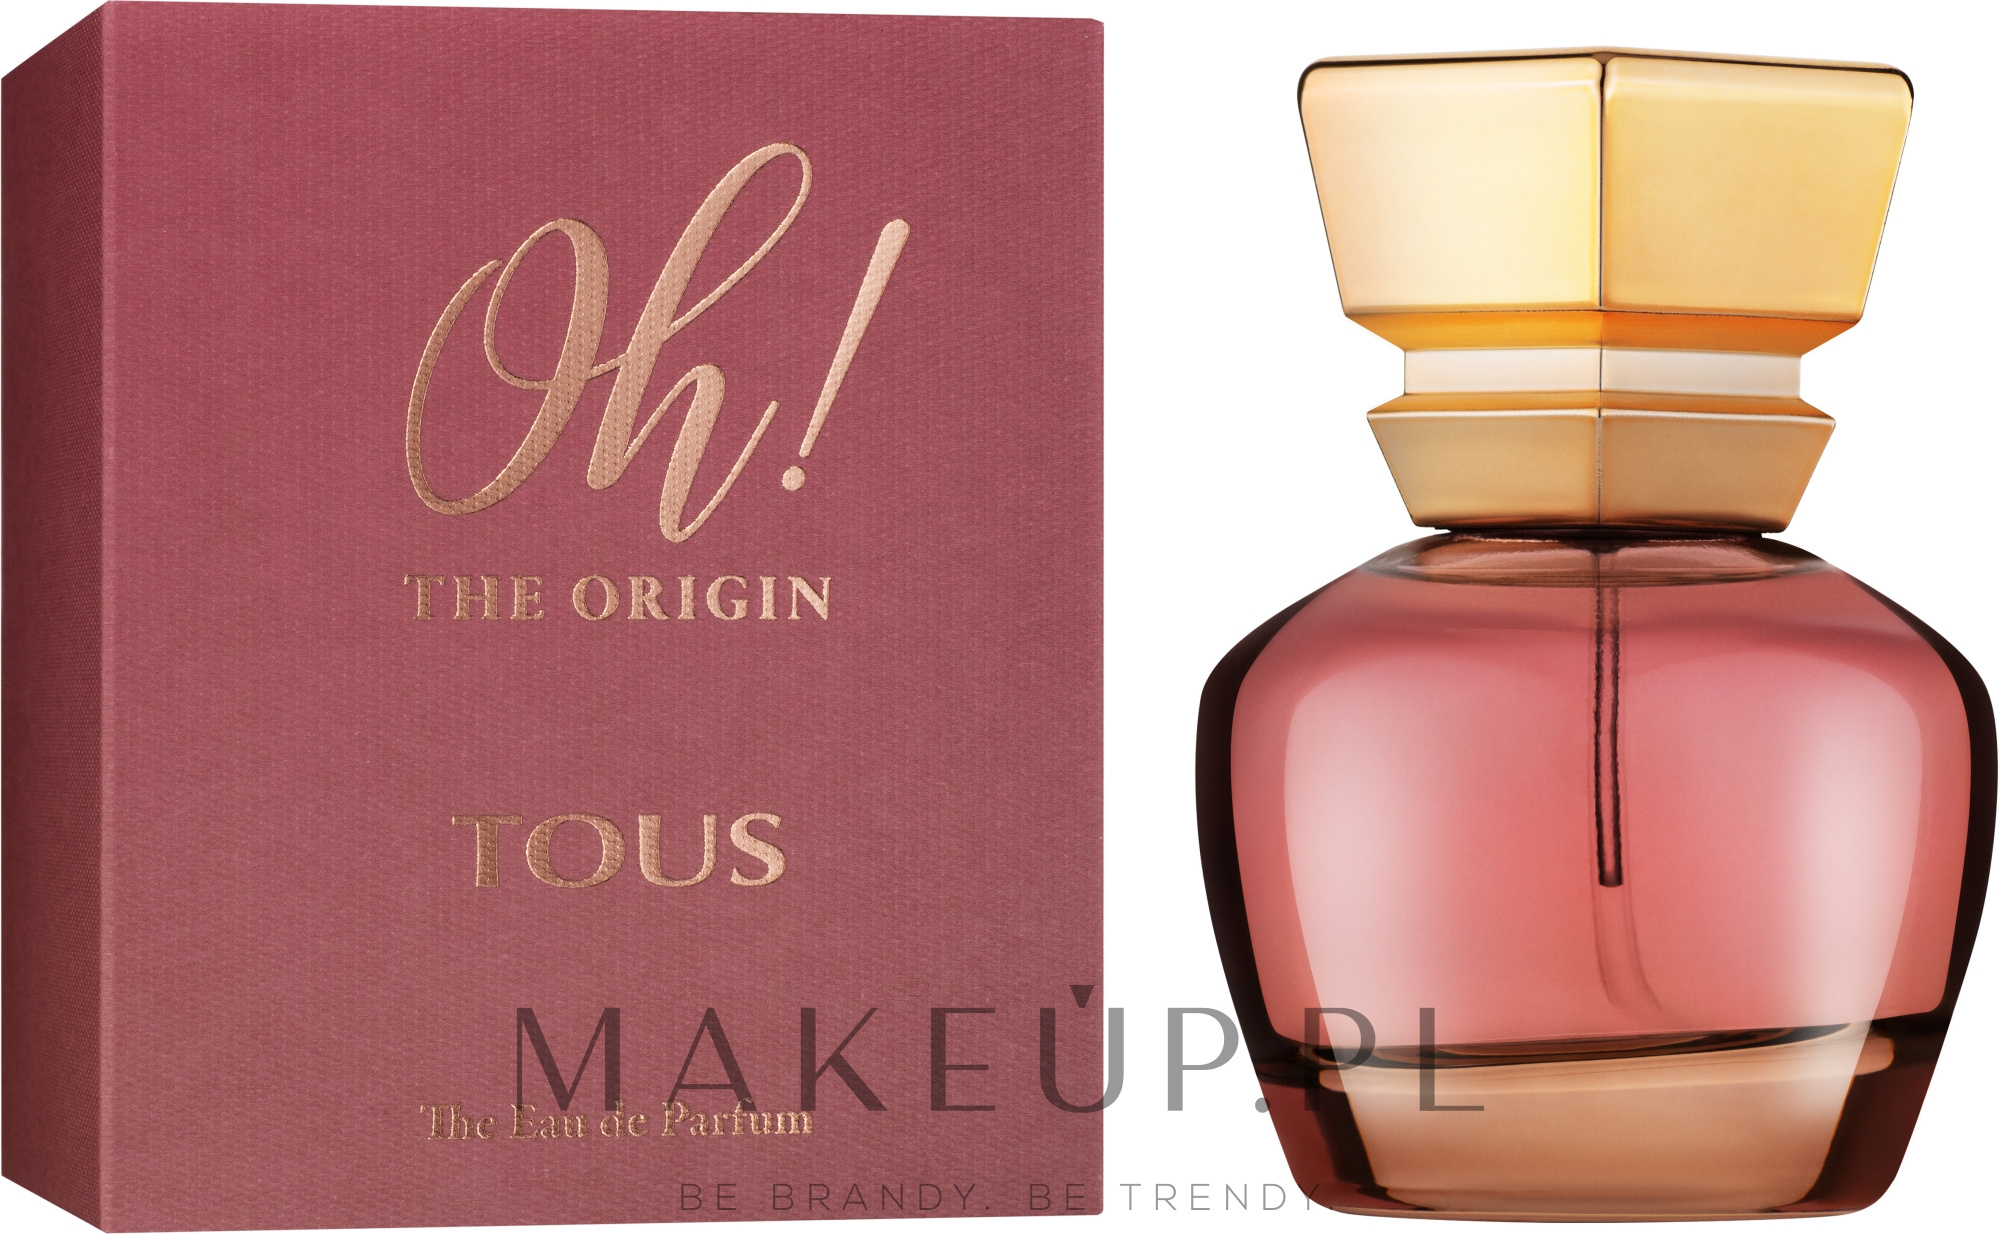 Tous Oh! The Origin - Woda perfumowana — Zdjęcie 30 ml